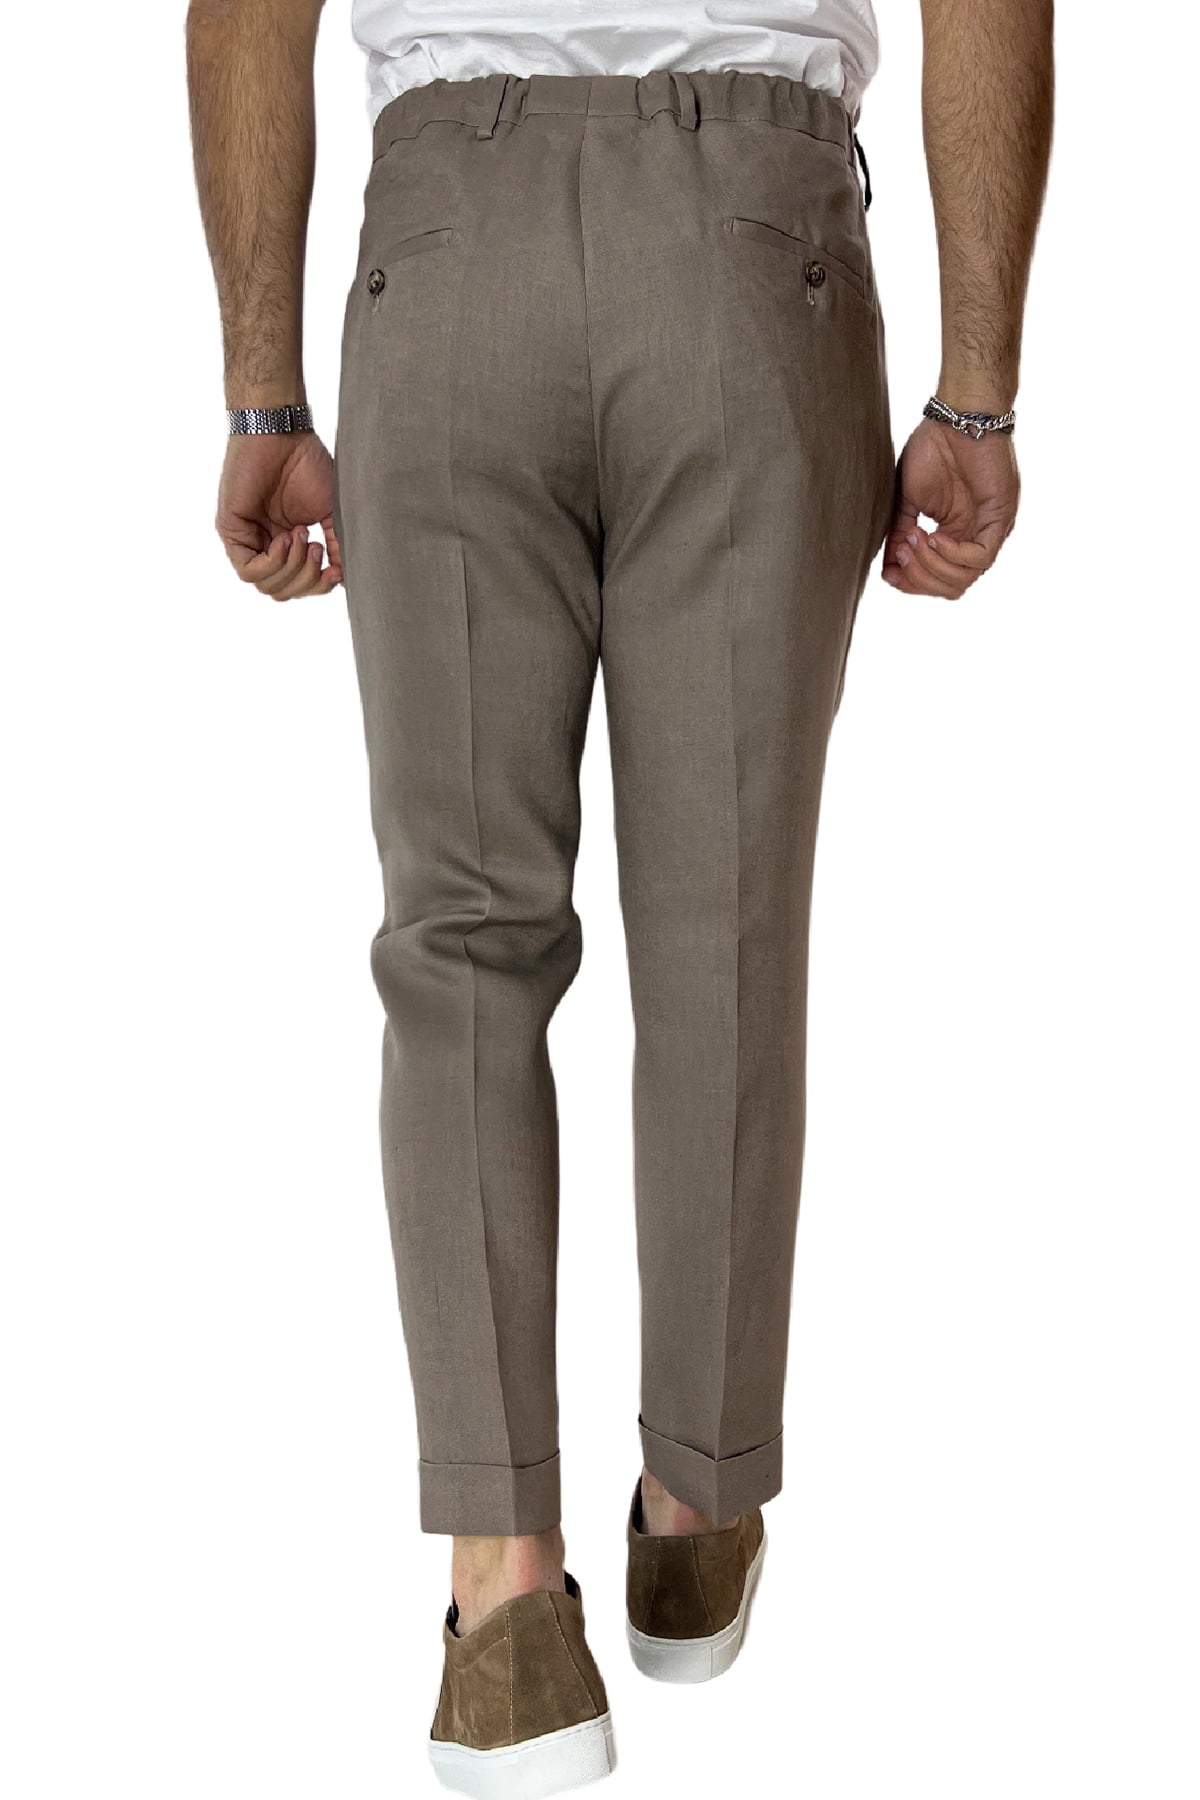 Pantalaccio uomo Fango in lino 100% tasca america con doppia pence e laccio in vita risvolto 4cm